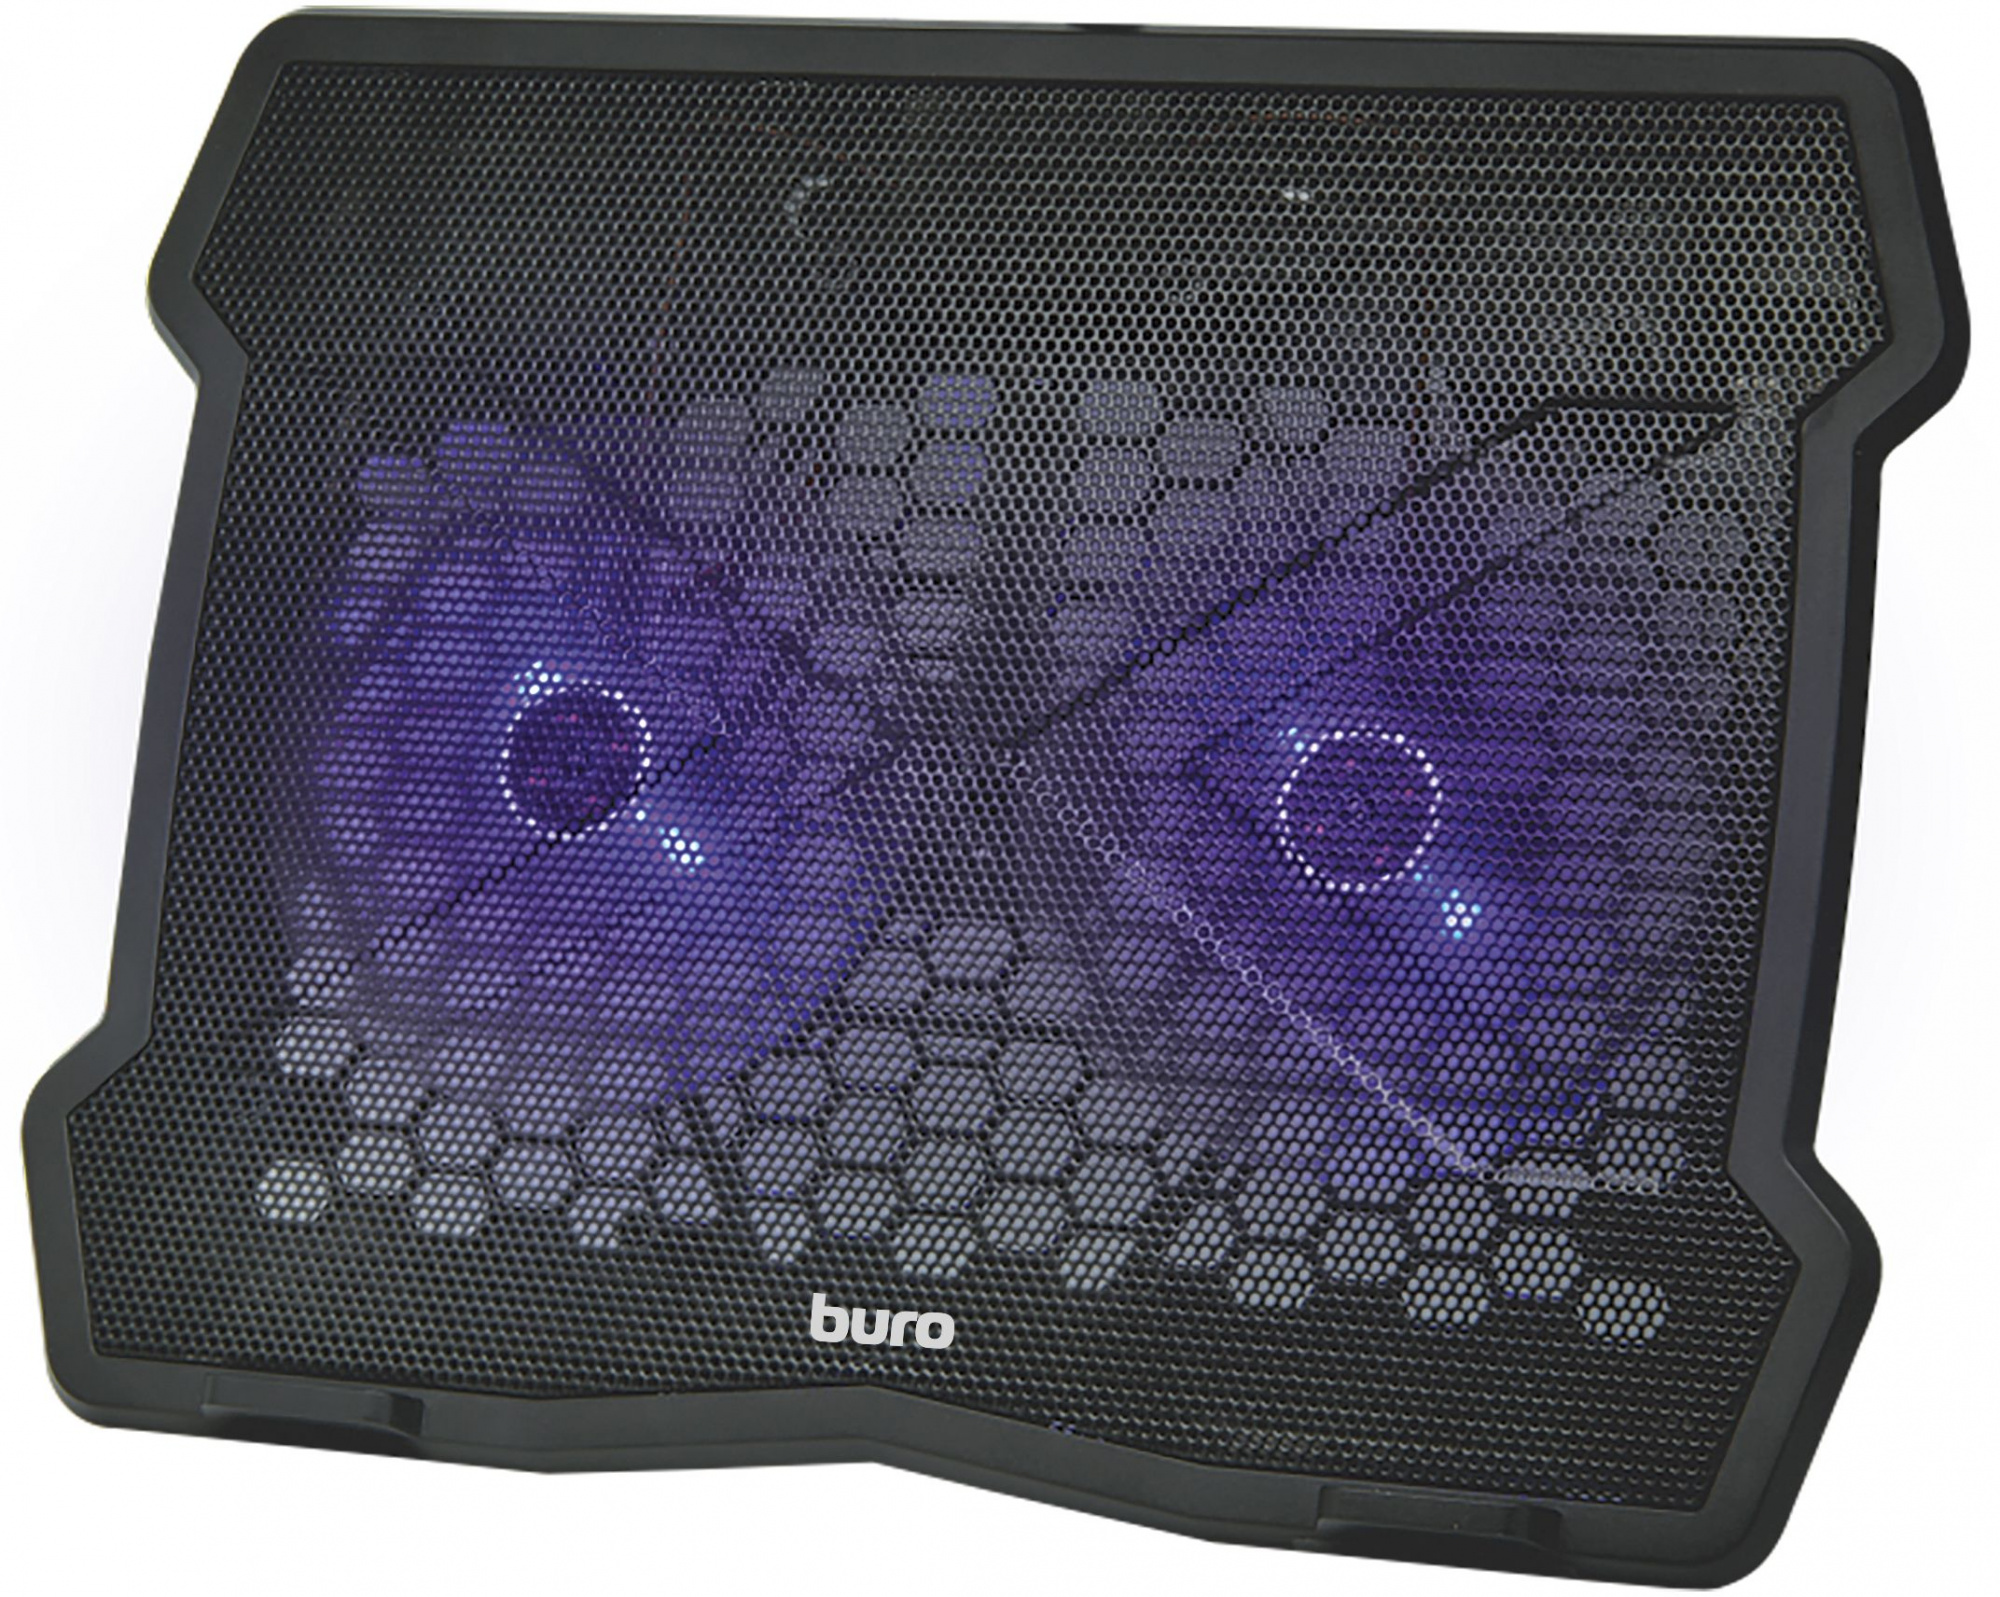 Подставка для ноутбука Buro BU-LCP150-B212 15